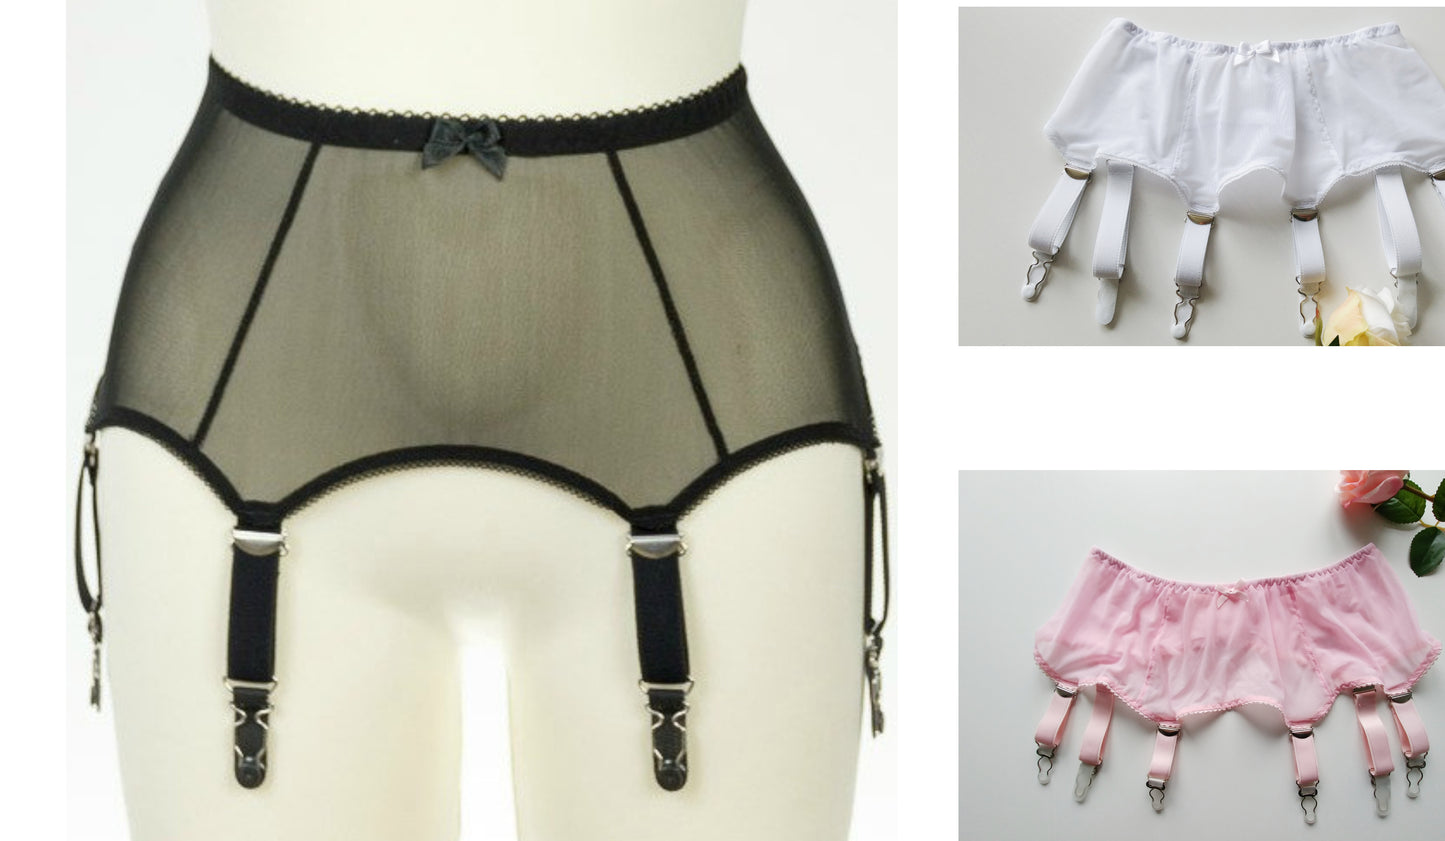 Black White Pink Beige Sheer mesh LULA Garter belt Transparent Suspender Belt